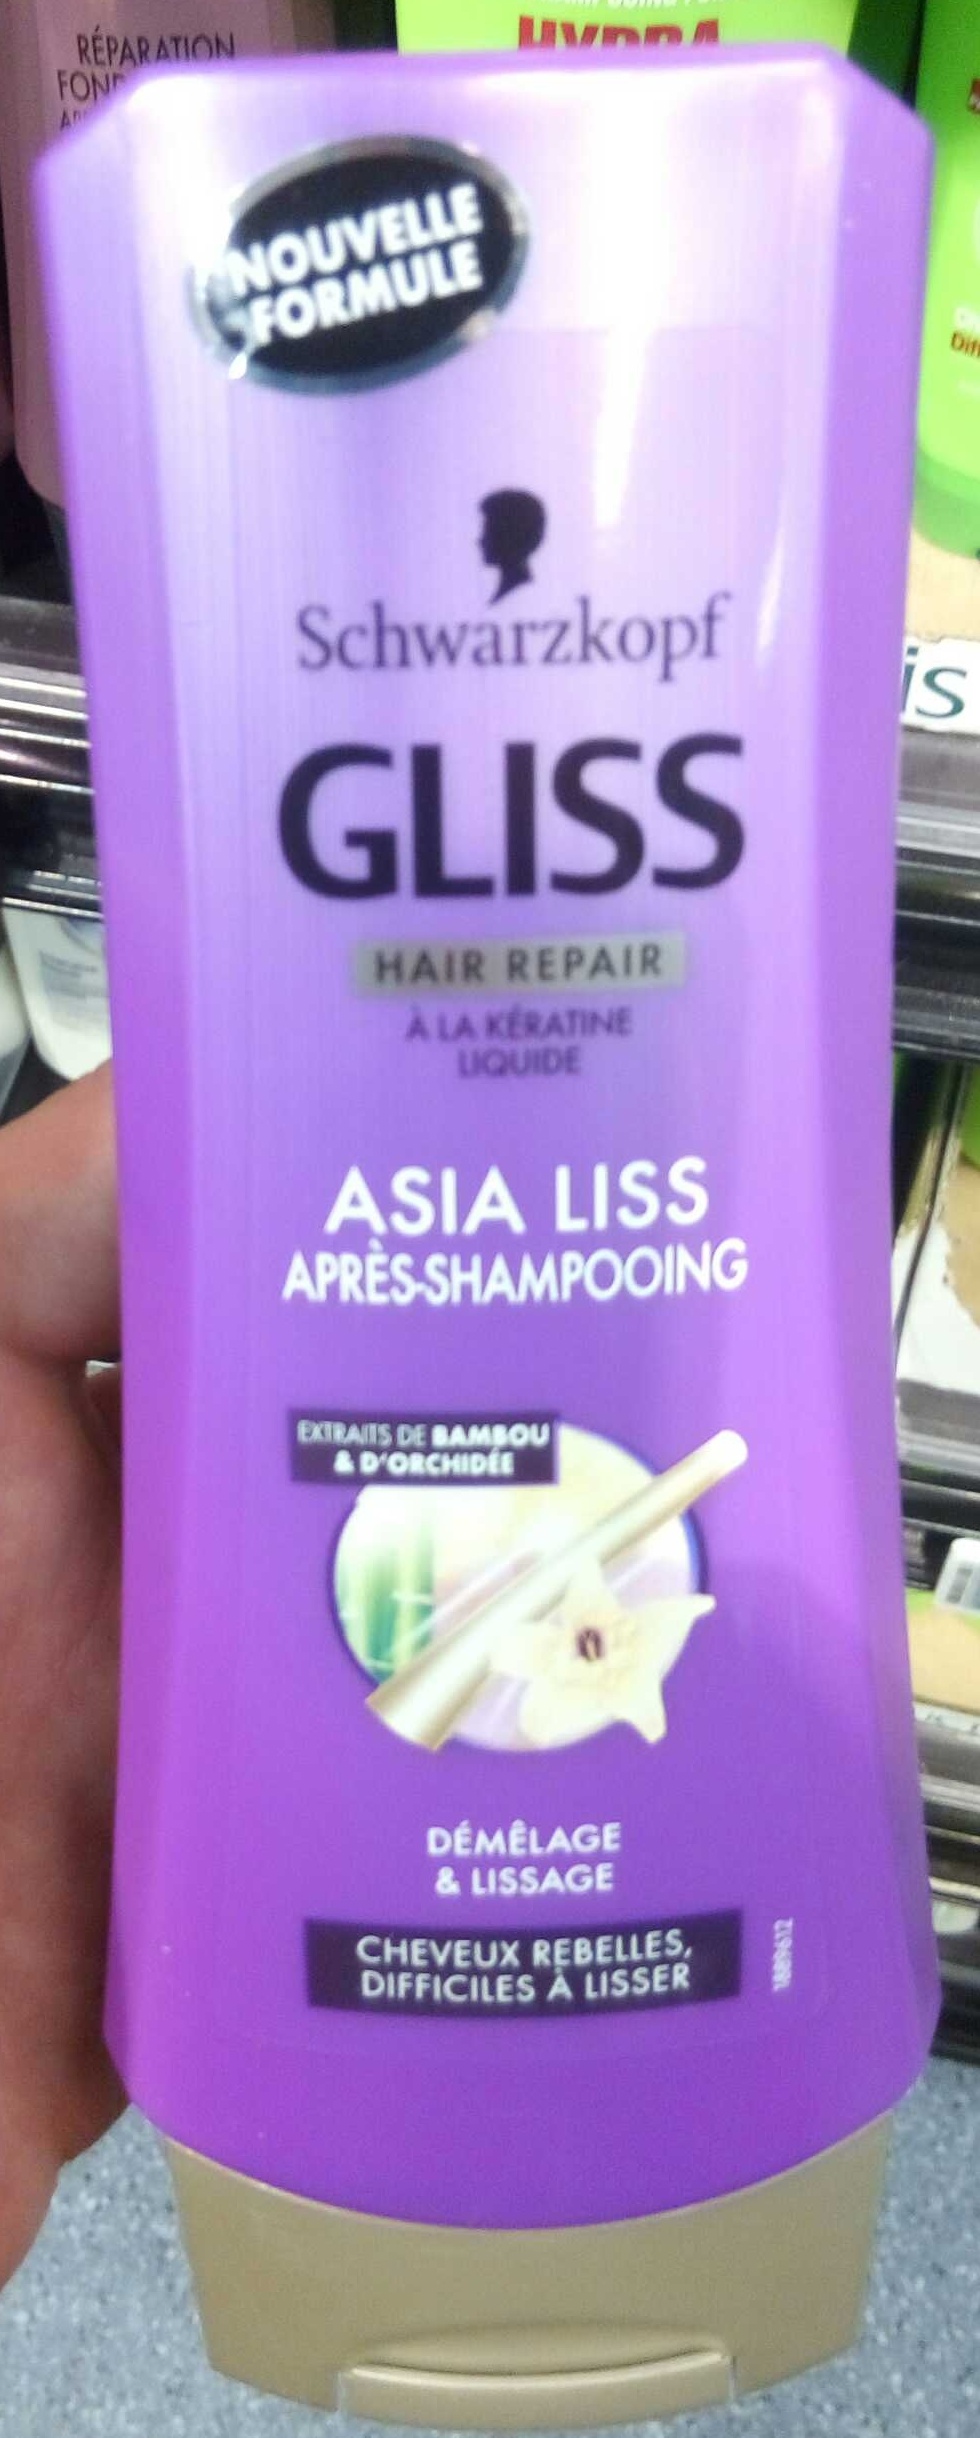 Gliss Hair Repair Asia Liss Après-shampooing - Product - fr